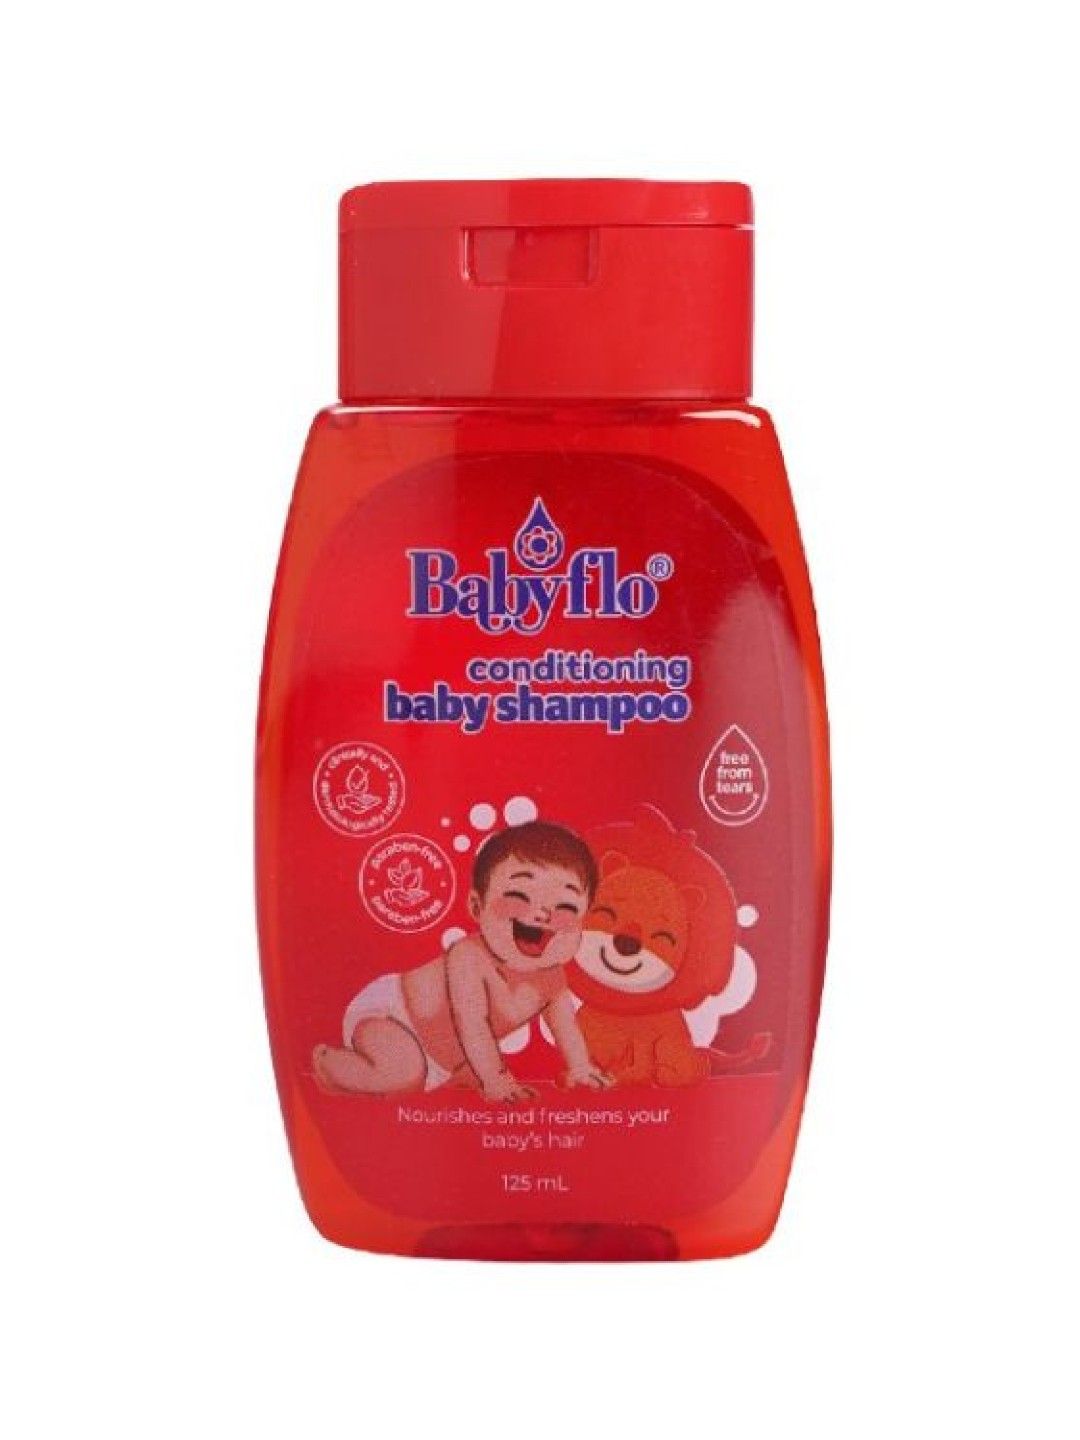 Babyflo Baby Shampoo Conditioning (125ml- Image 1)